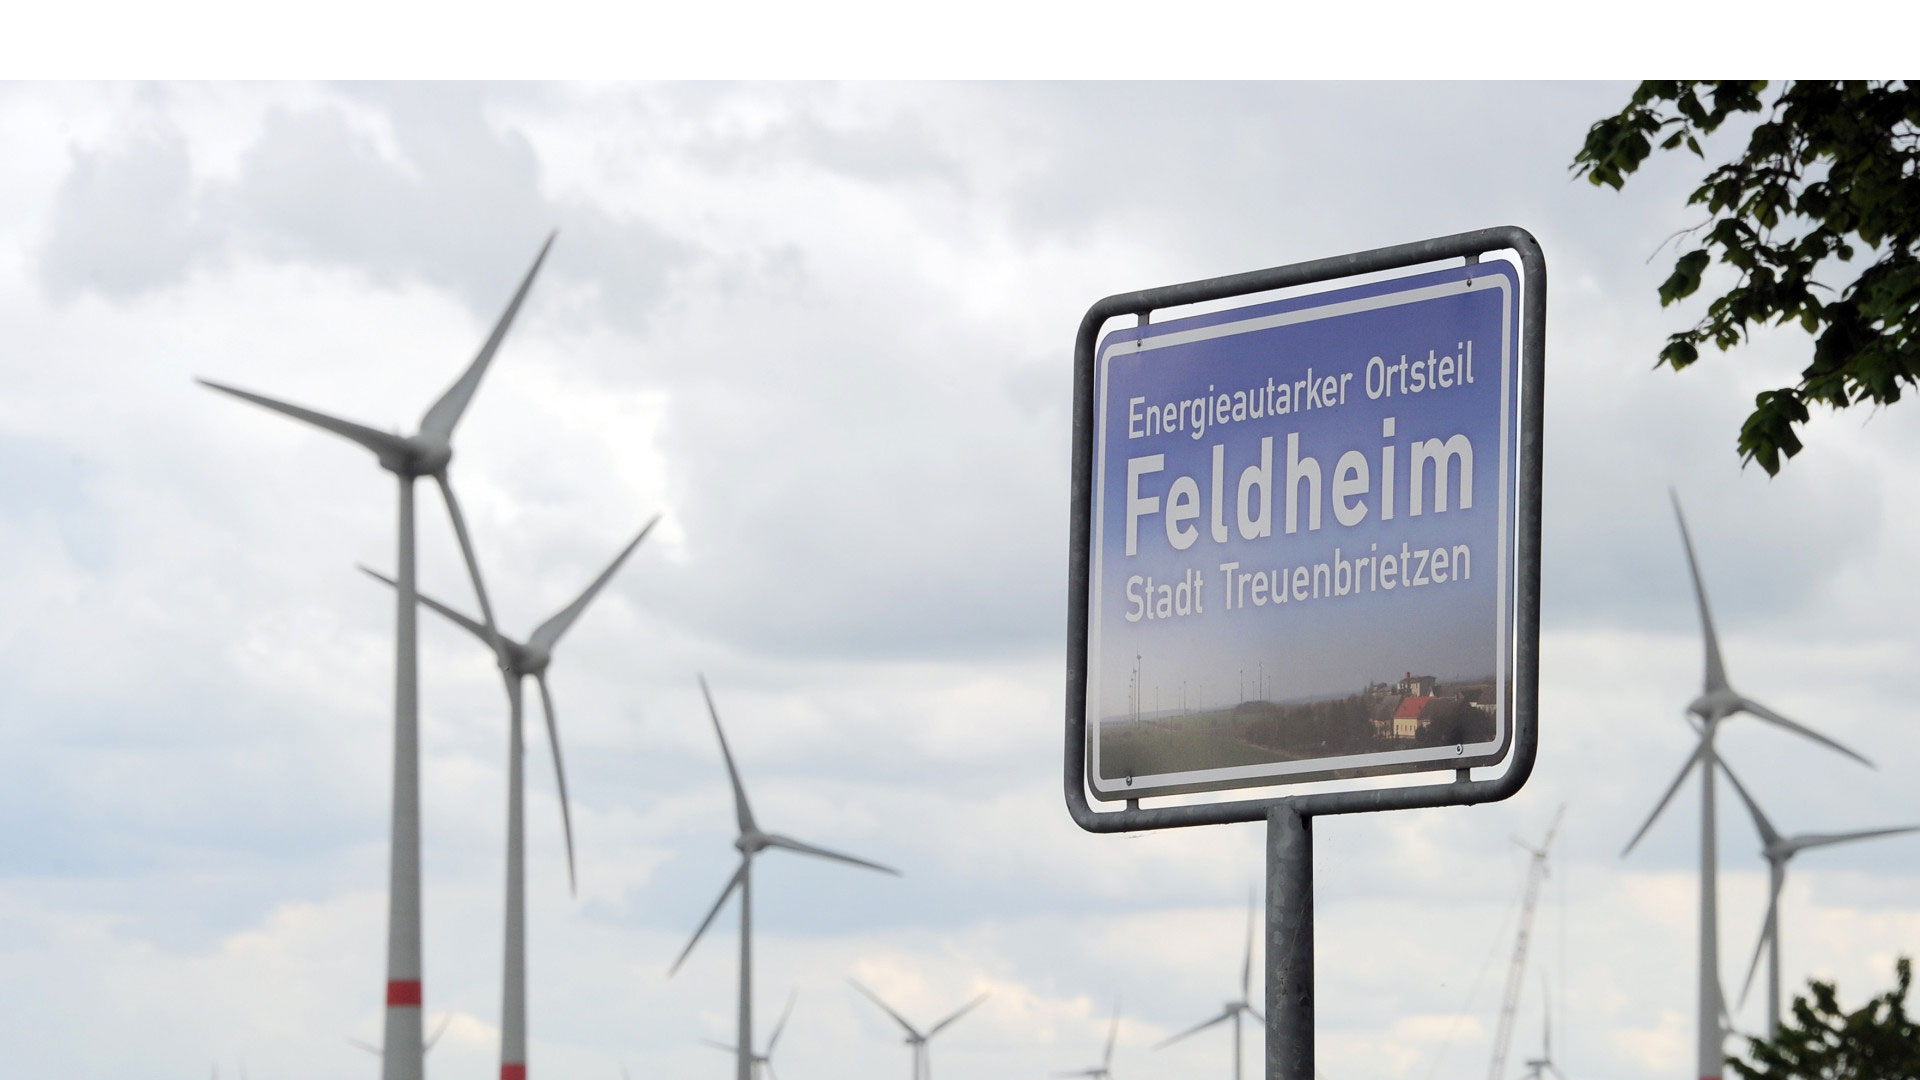 Tras muchos esfuerzos, un pueblo situado a 60 kilómetros de Berlín se convirtió en el primero del país en ser autosuficiente energéticamente